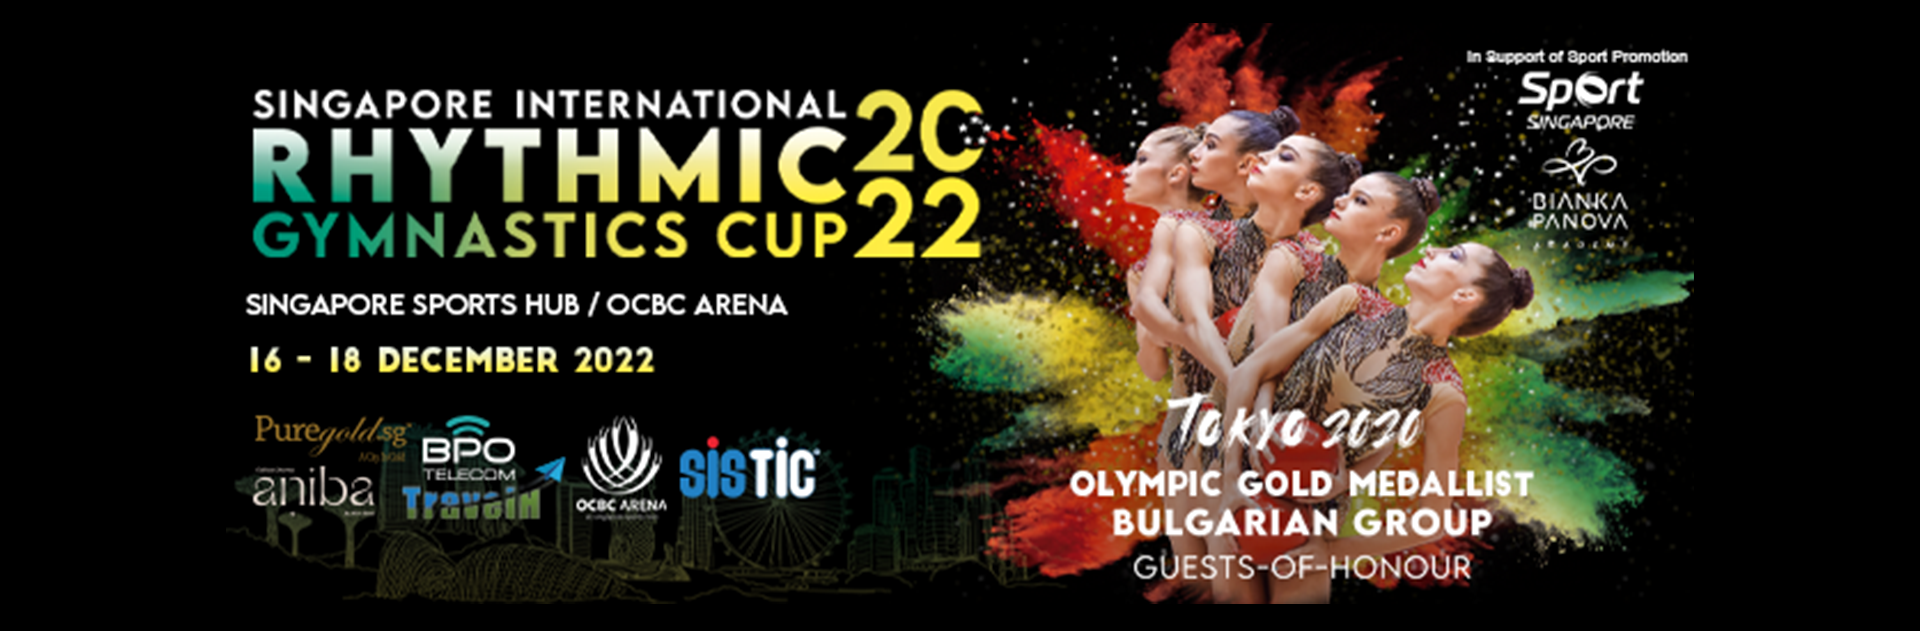 Singapore International Rhythmic Gymnastics Cup 2022